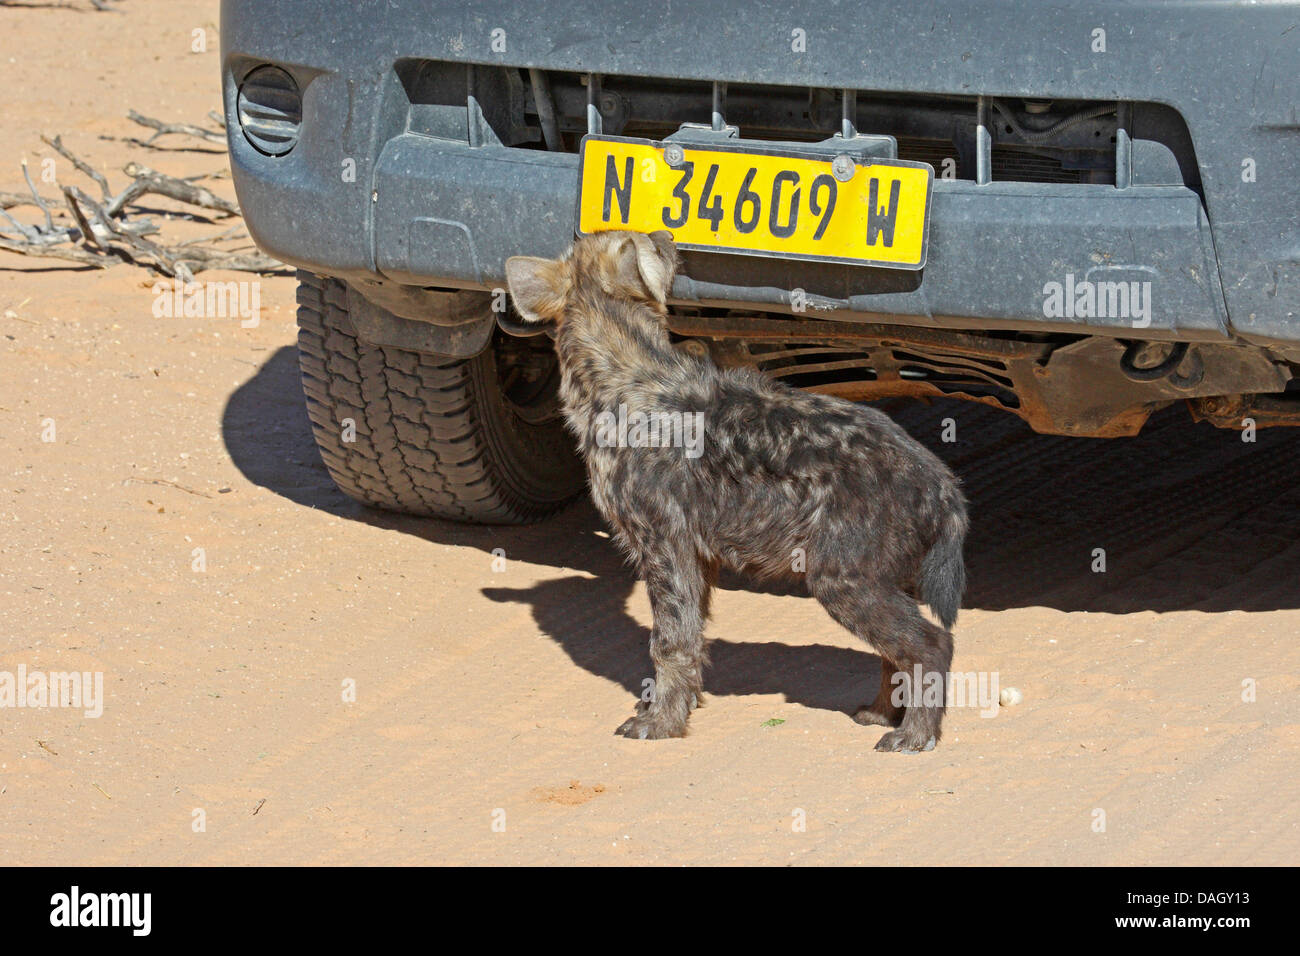 L'Hyène tachetée (Crocuta crocuta), juvénile sur une voiture, Afrique du Sud, Kgalagadi Transfrontier National Park Banque D'Images